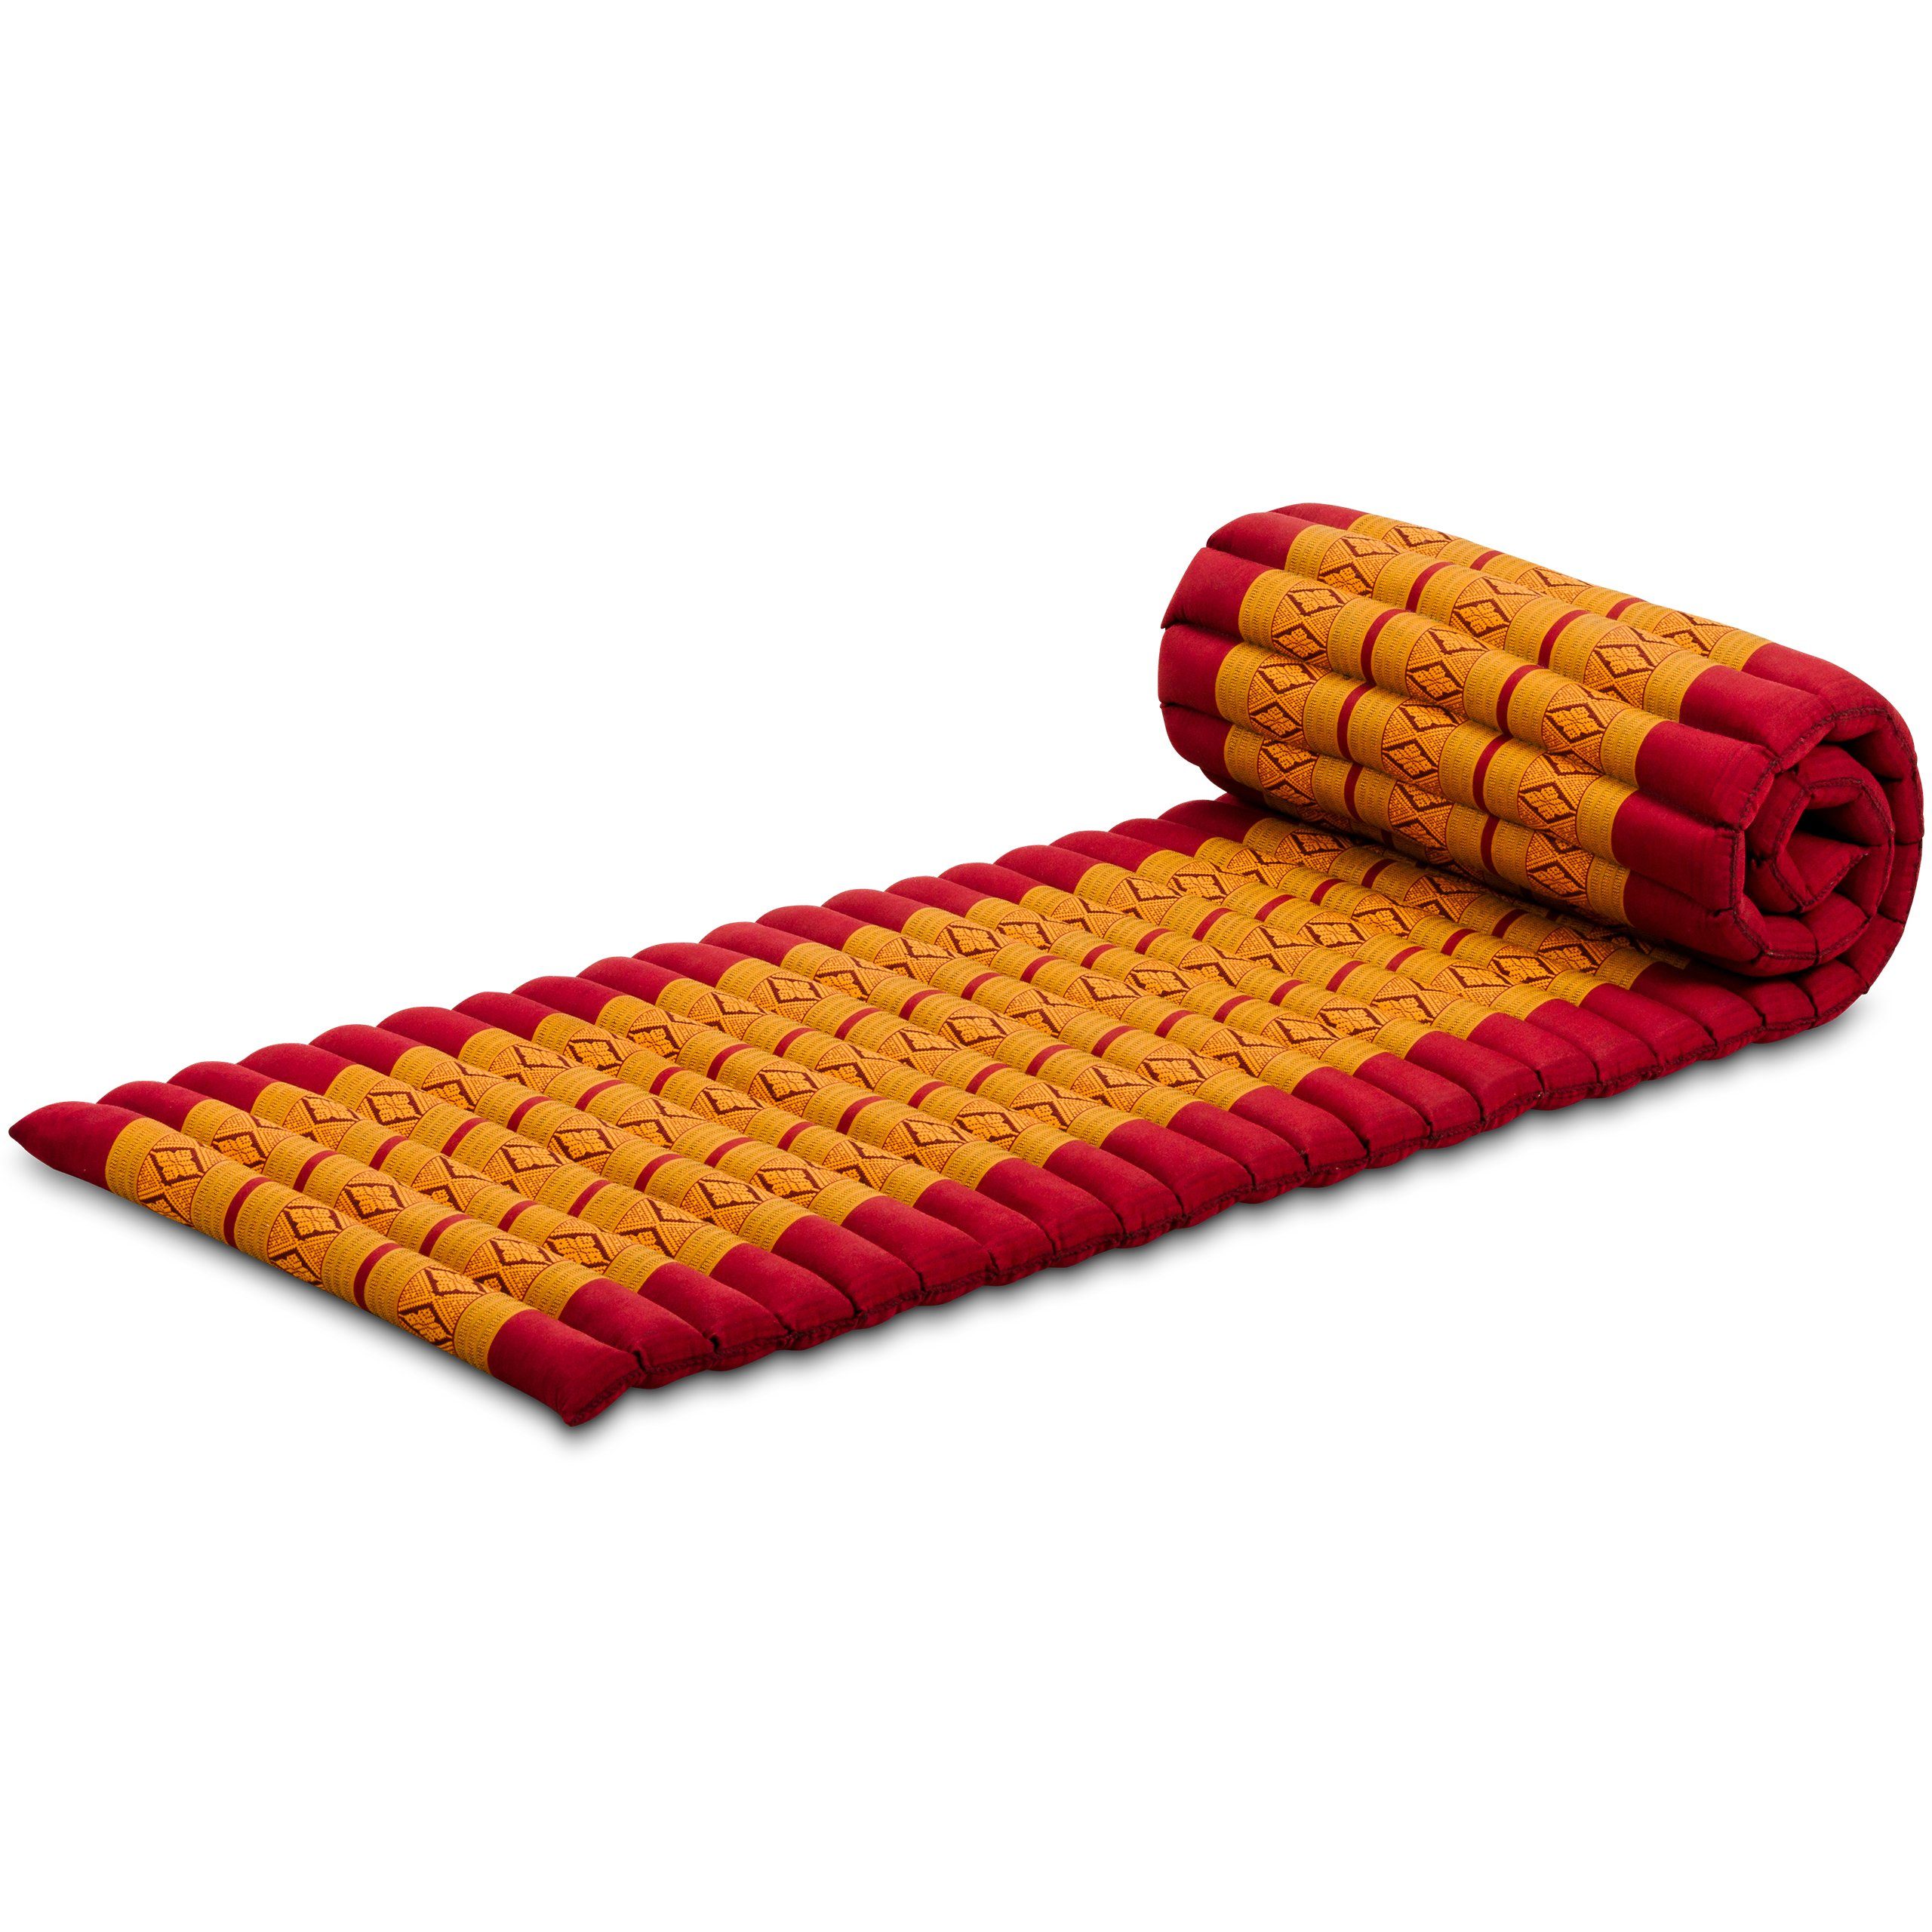 Reisebett-Matratzen Rollmatte 50 cm breit, vegan und handgefertigt, 210x50x4,5cm, livasia, 4,50 cm hoch, Kapok Rot/Gelb